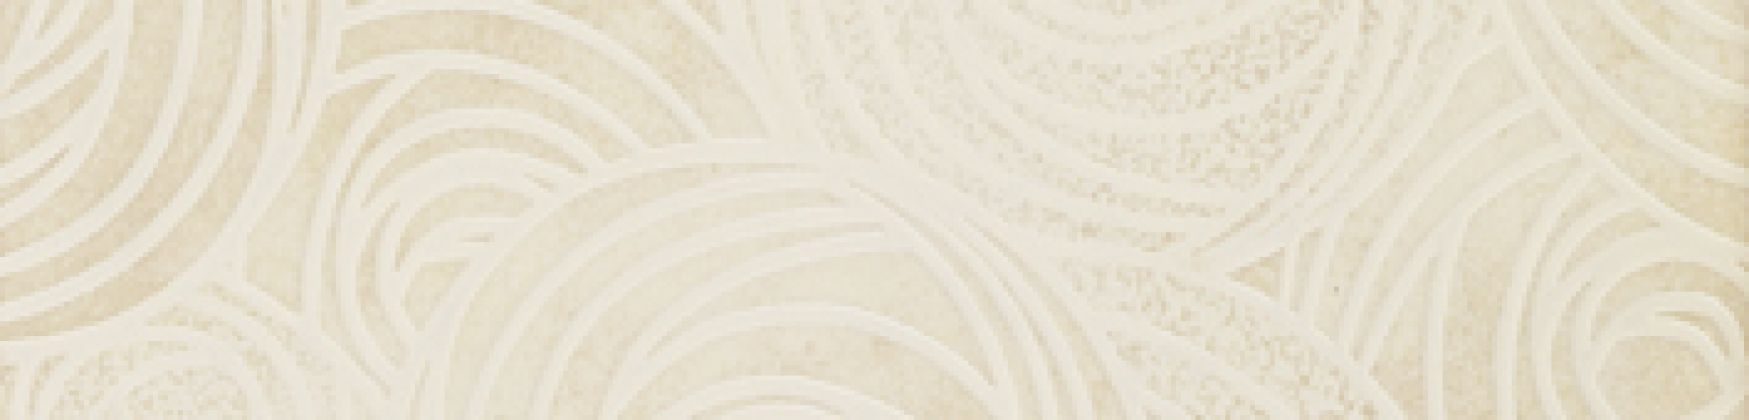 Пьемонтэ белый Камелия 7,2x30 610090000321